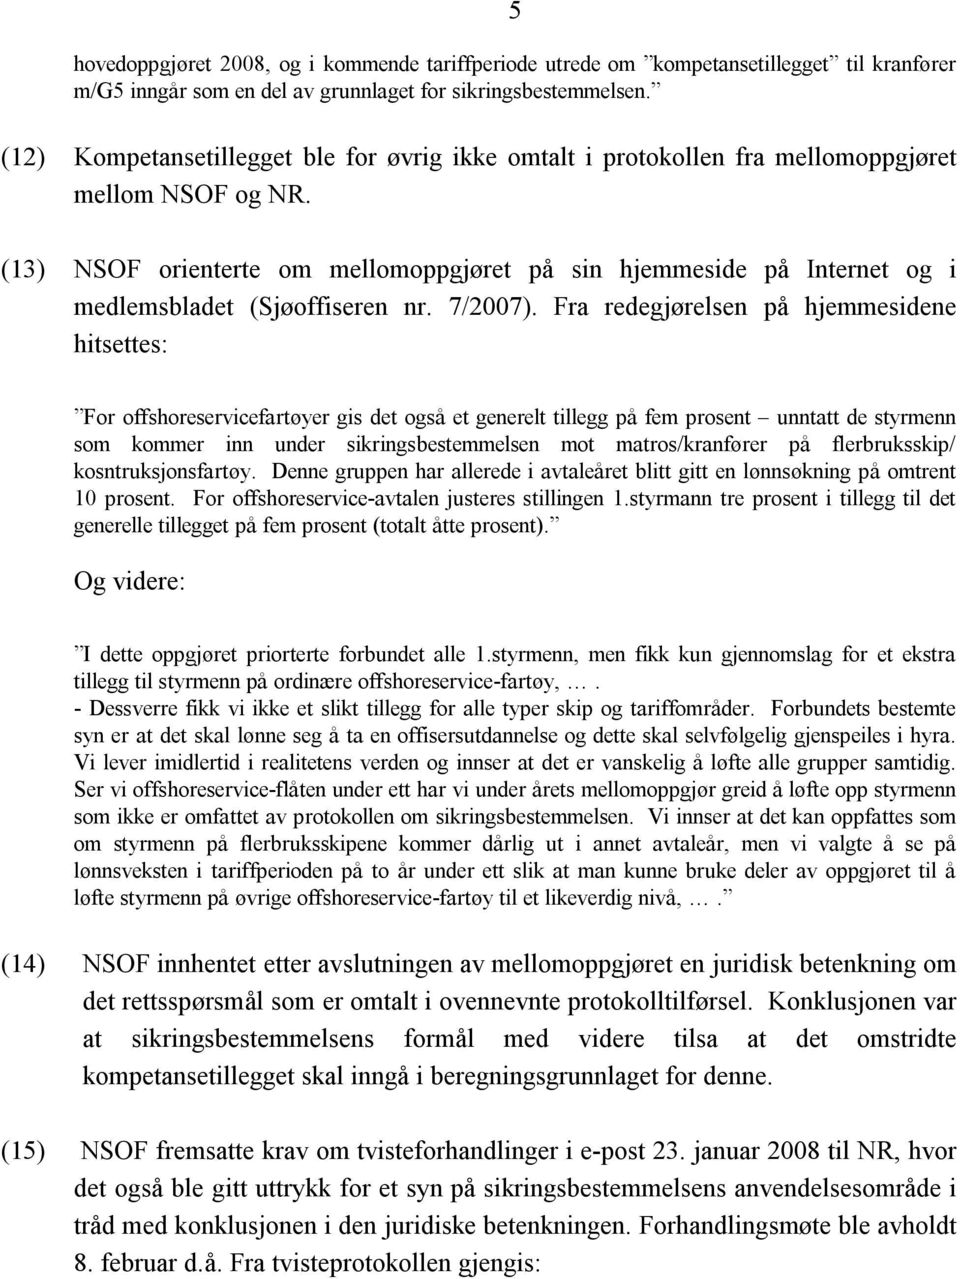 (13) NSOF orienterte om mellomoppgjøret på sin hjemmeside på Internet og i medlemsbladet (Sjøoffiseren nr. 7/2007).